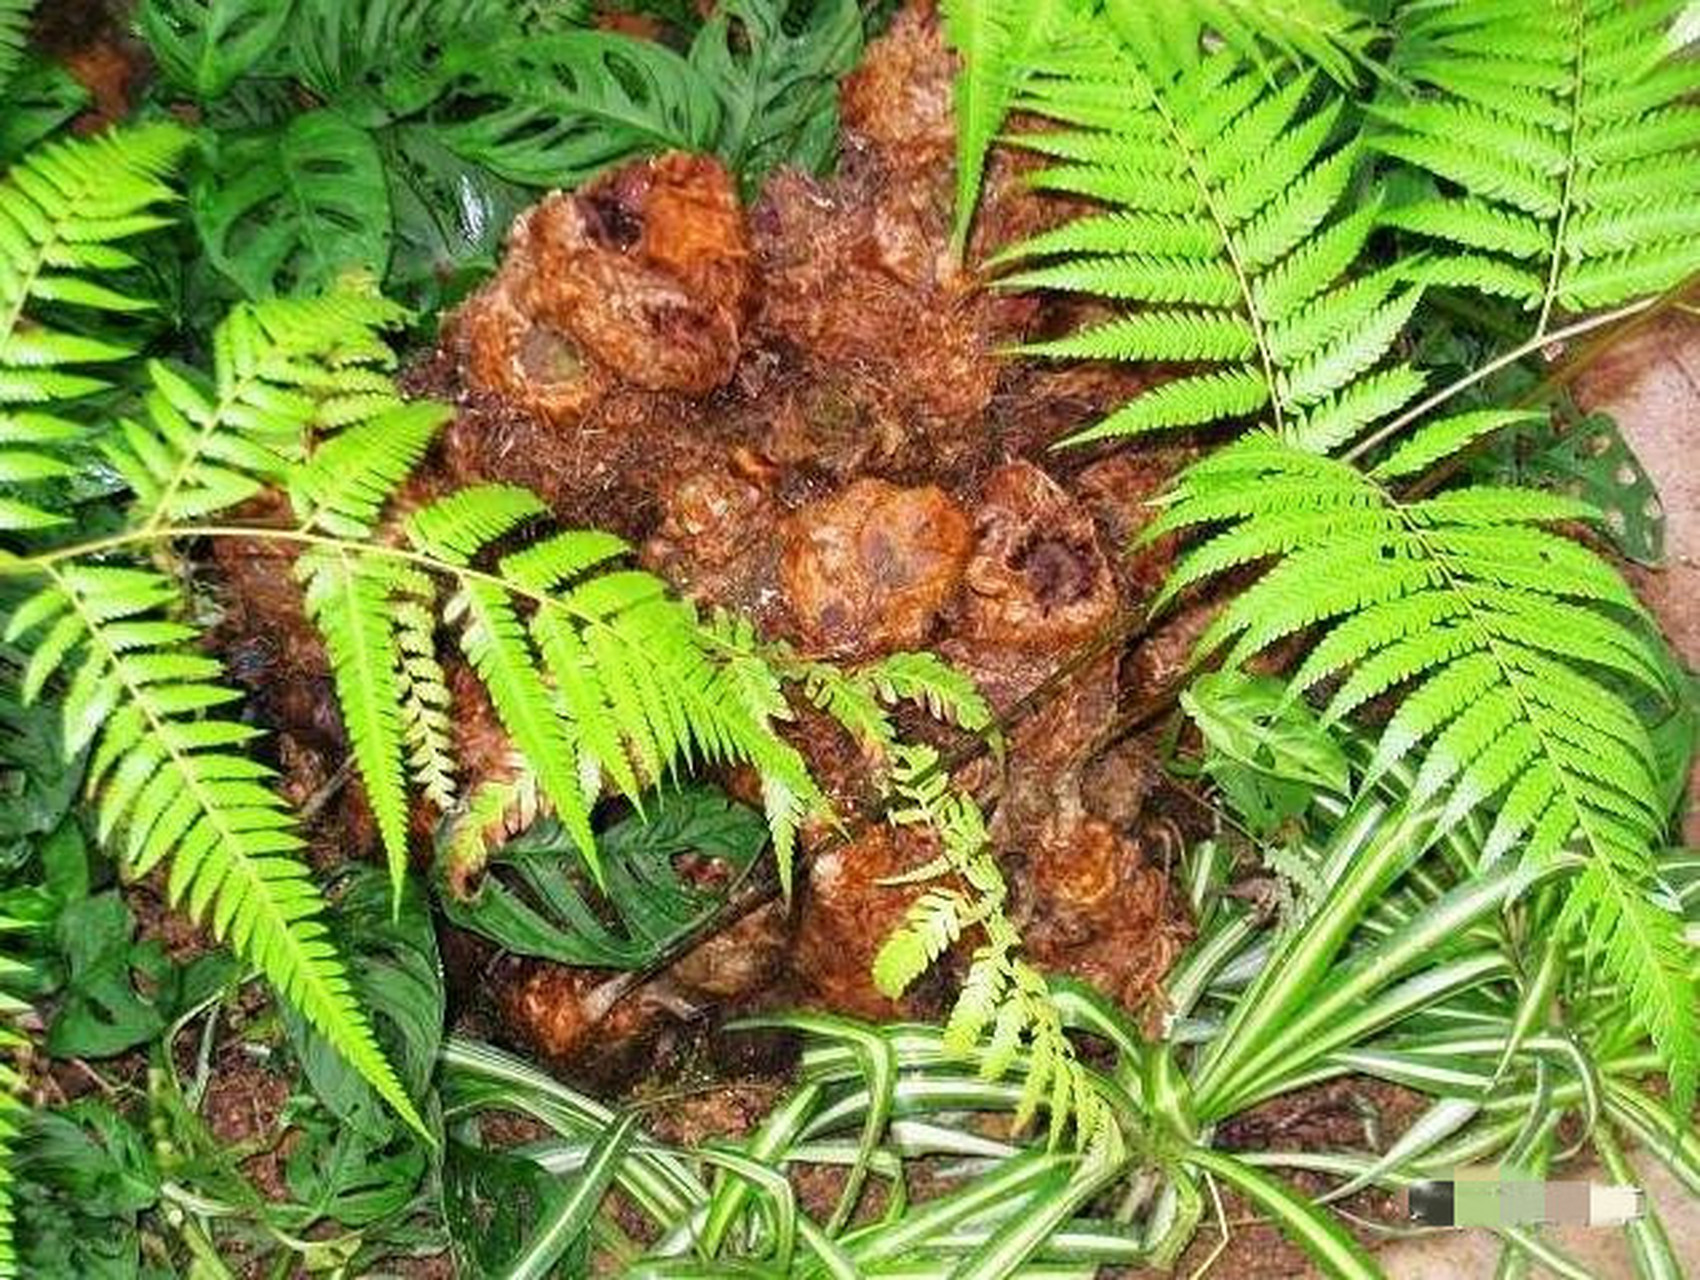 2,金毛狗蕨中药名称为狗脊,属蚌壳蕨科植物,其根茎具有补肝肾,强腰膝